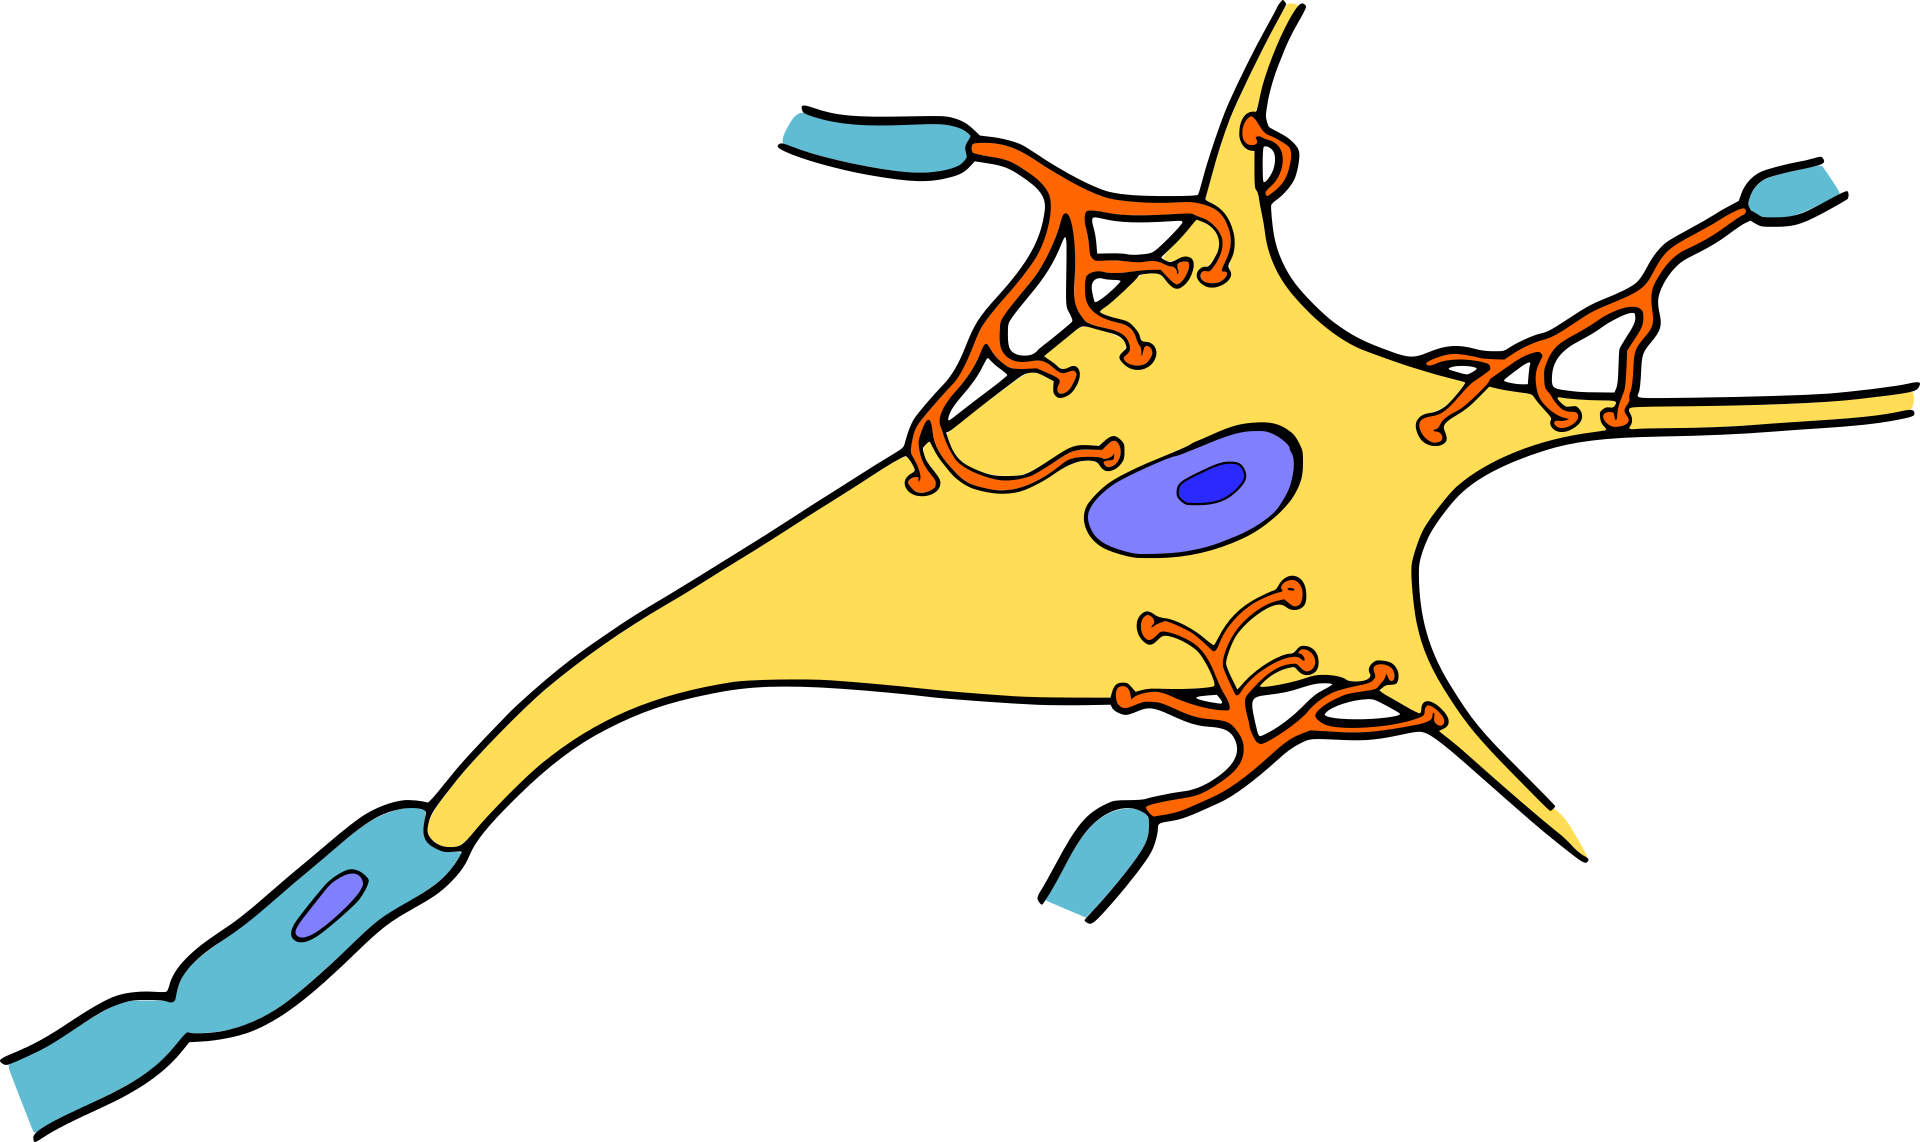 Cartoon representation of a nerve cell